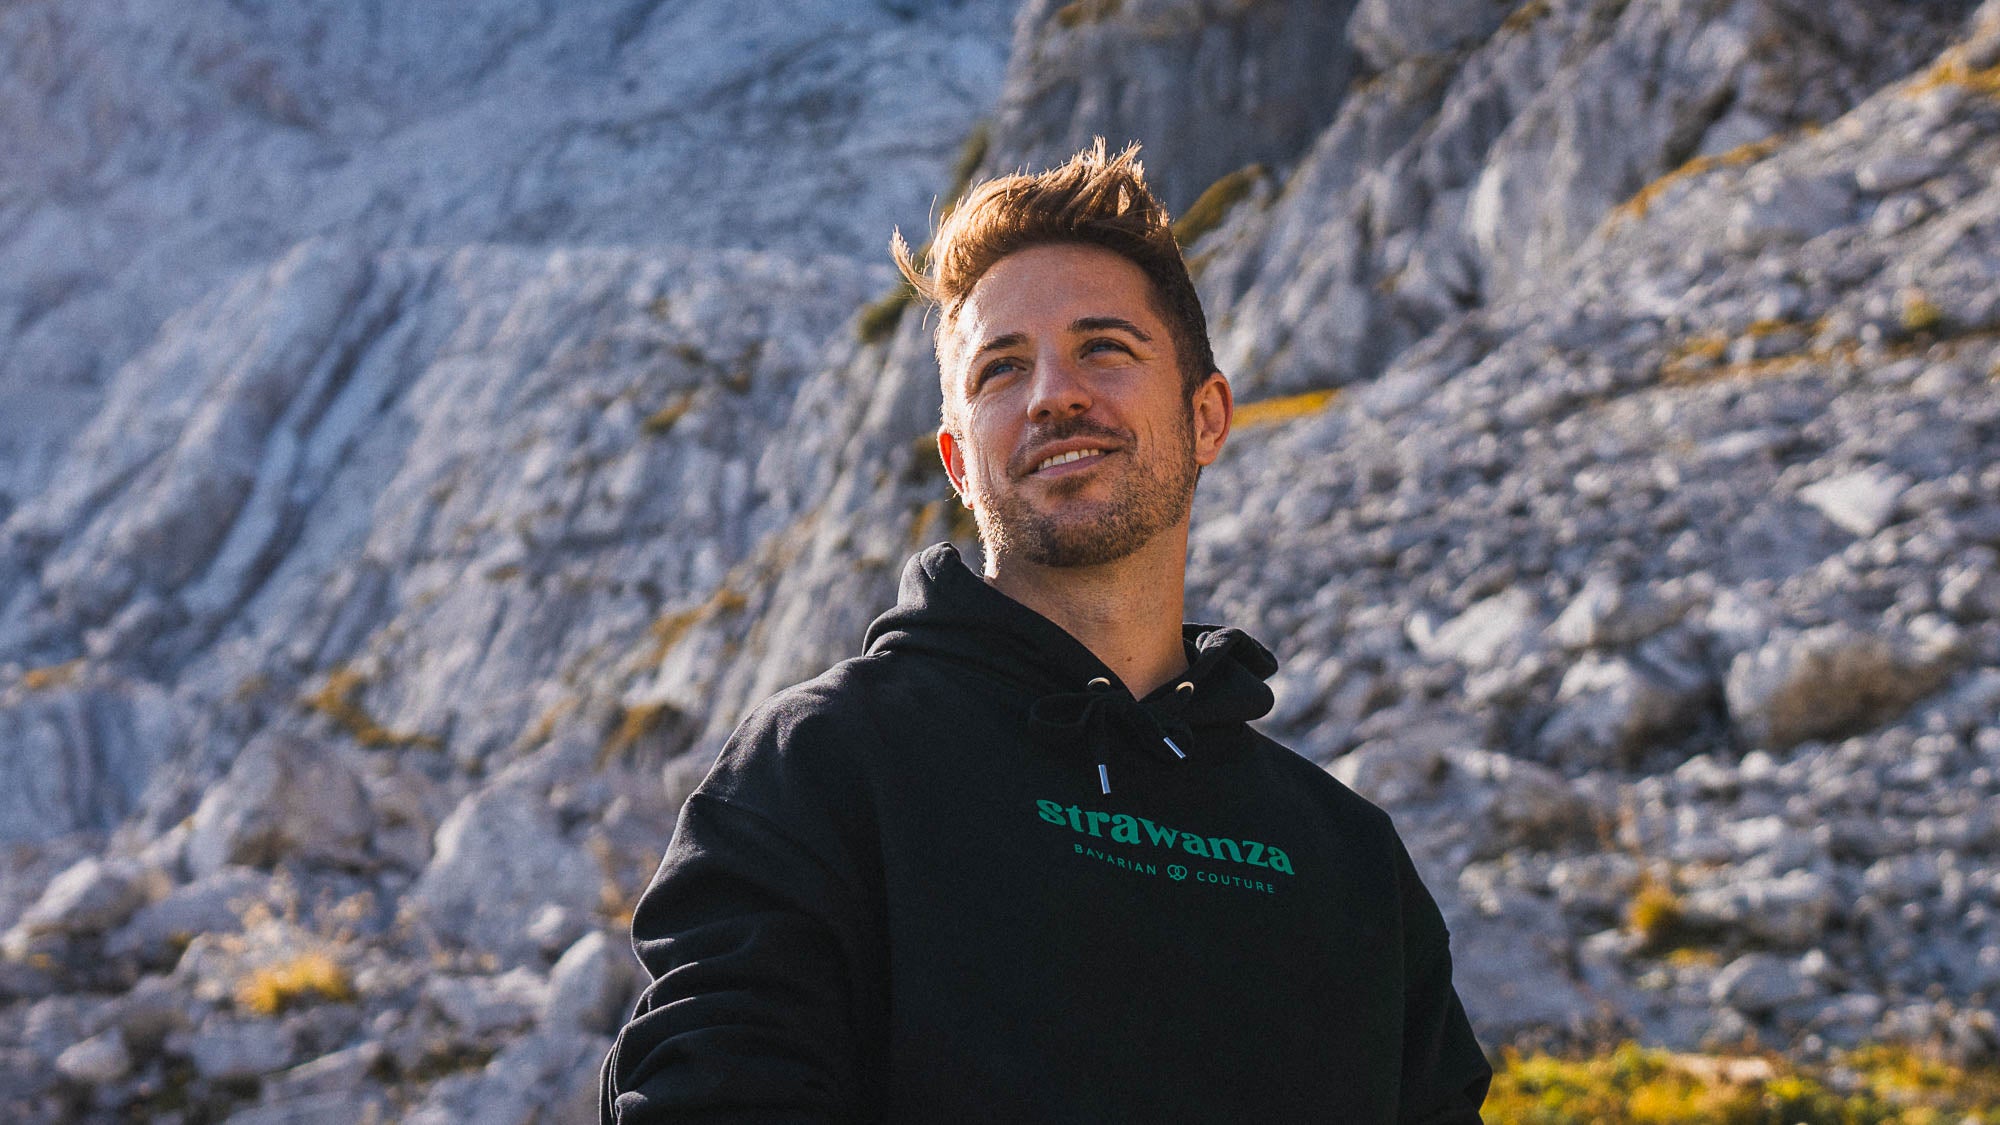 Männliches junges Model in schwarzem Sweatshirt mit grüner Bedruckung sitzt vor Bergkulisse in der bayerischen Natur. 